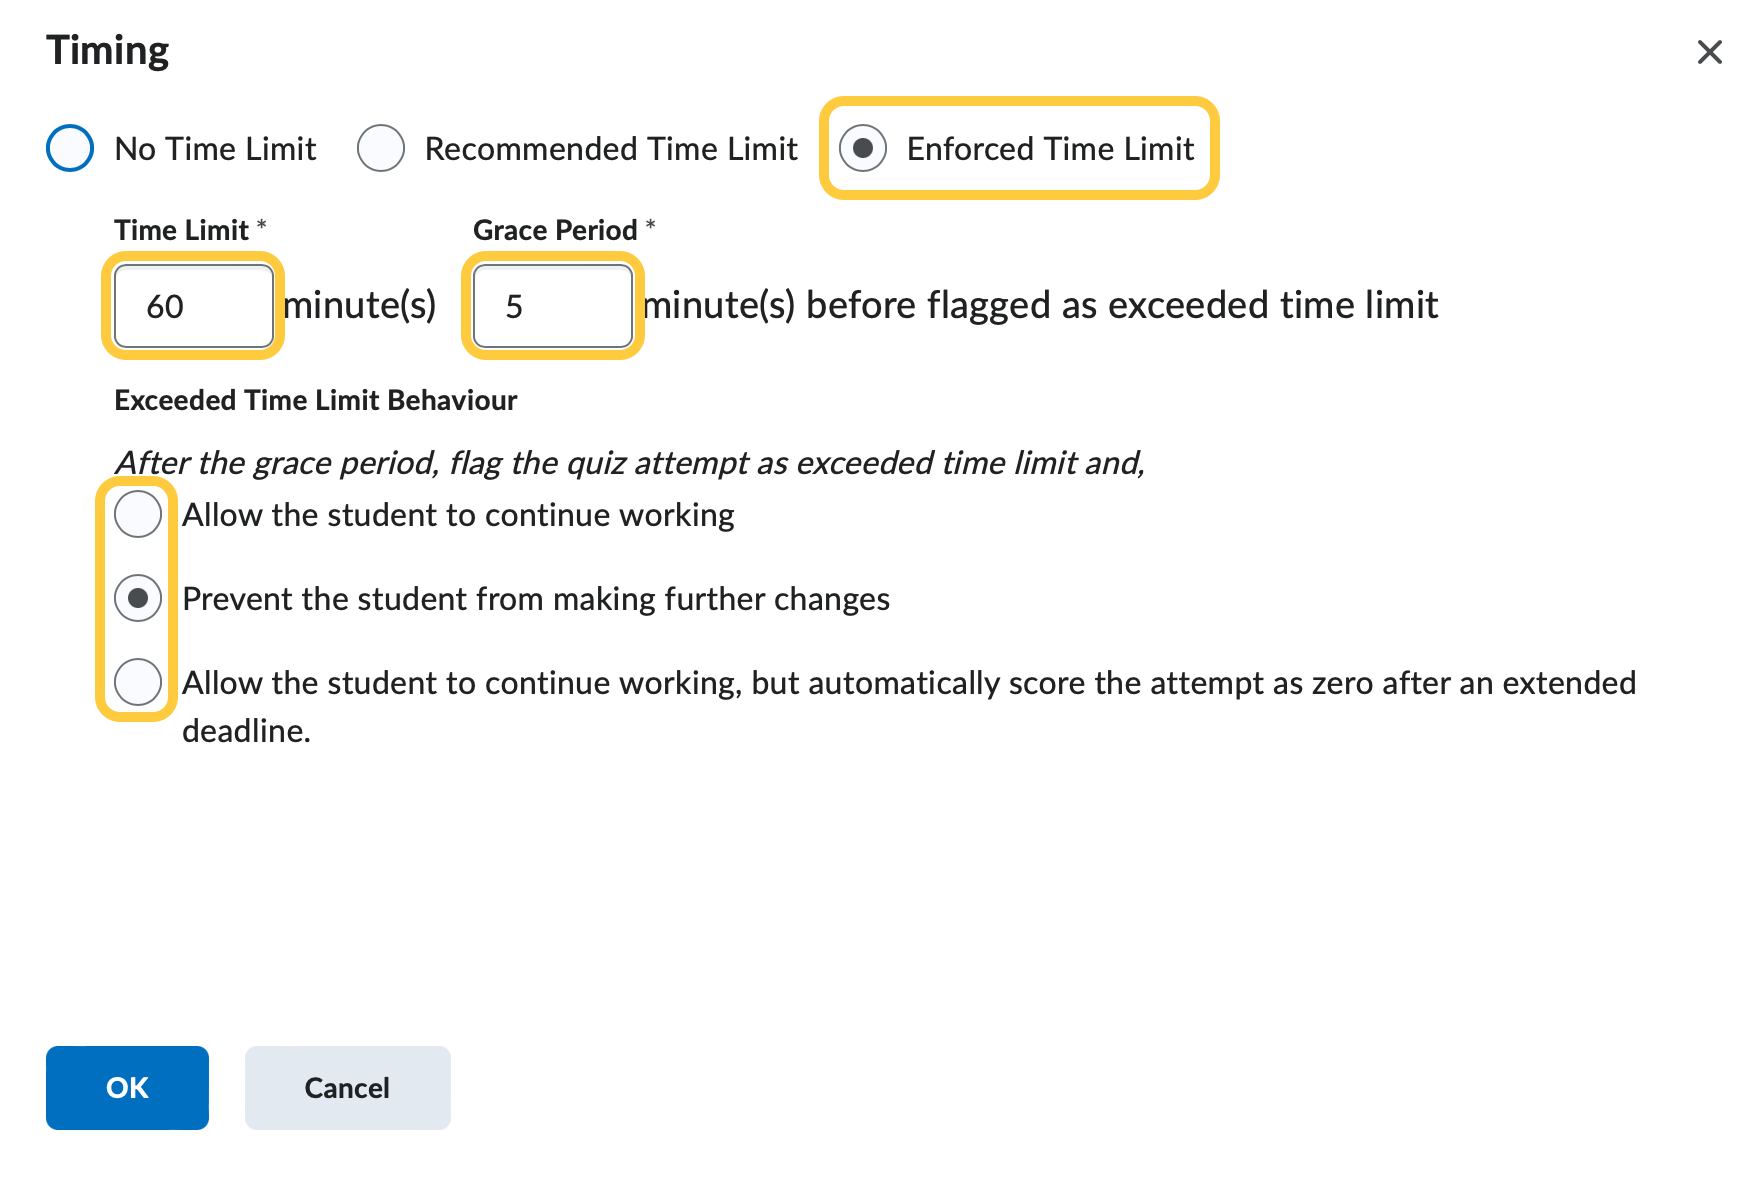 Quiz Enforced Time Limit